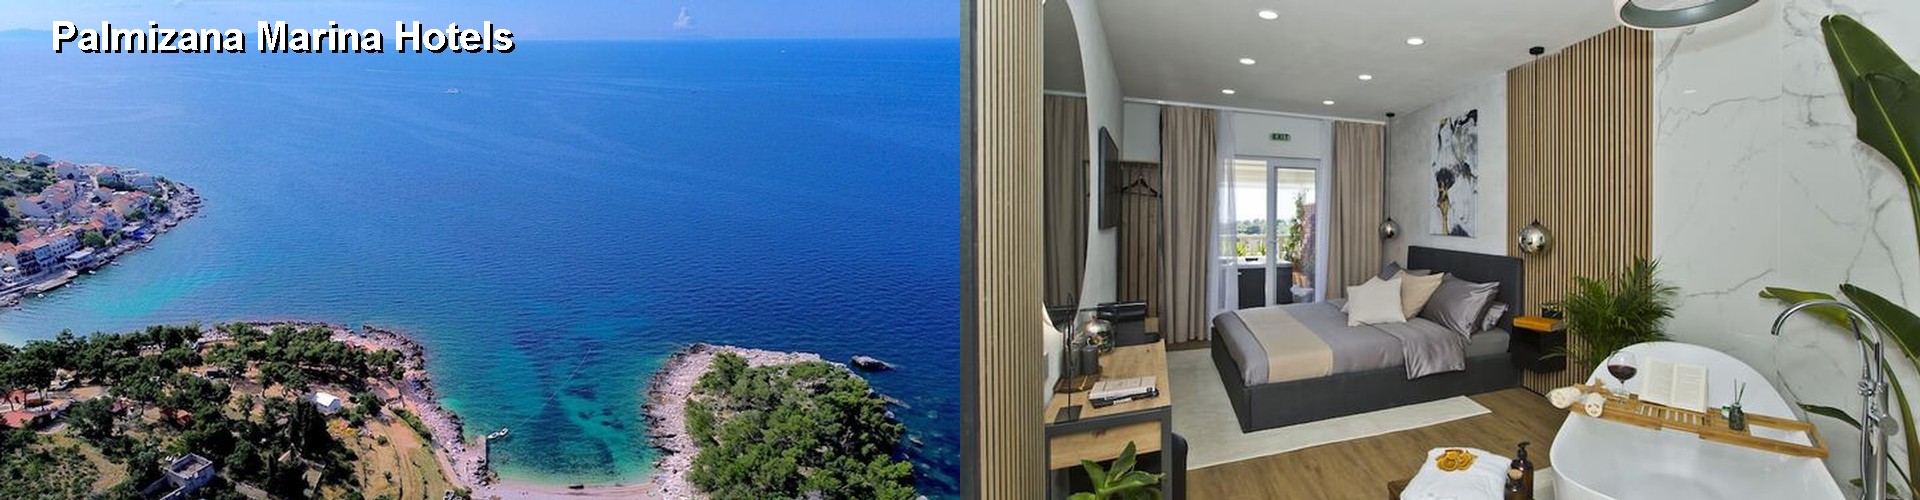 5 Best Hotels near Palmizana Marina